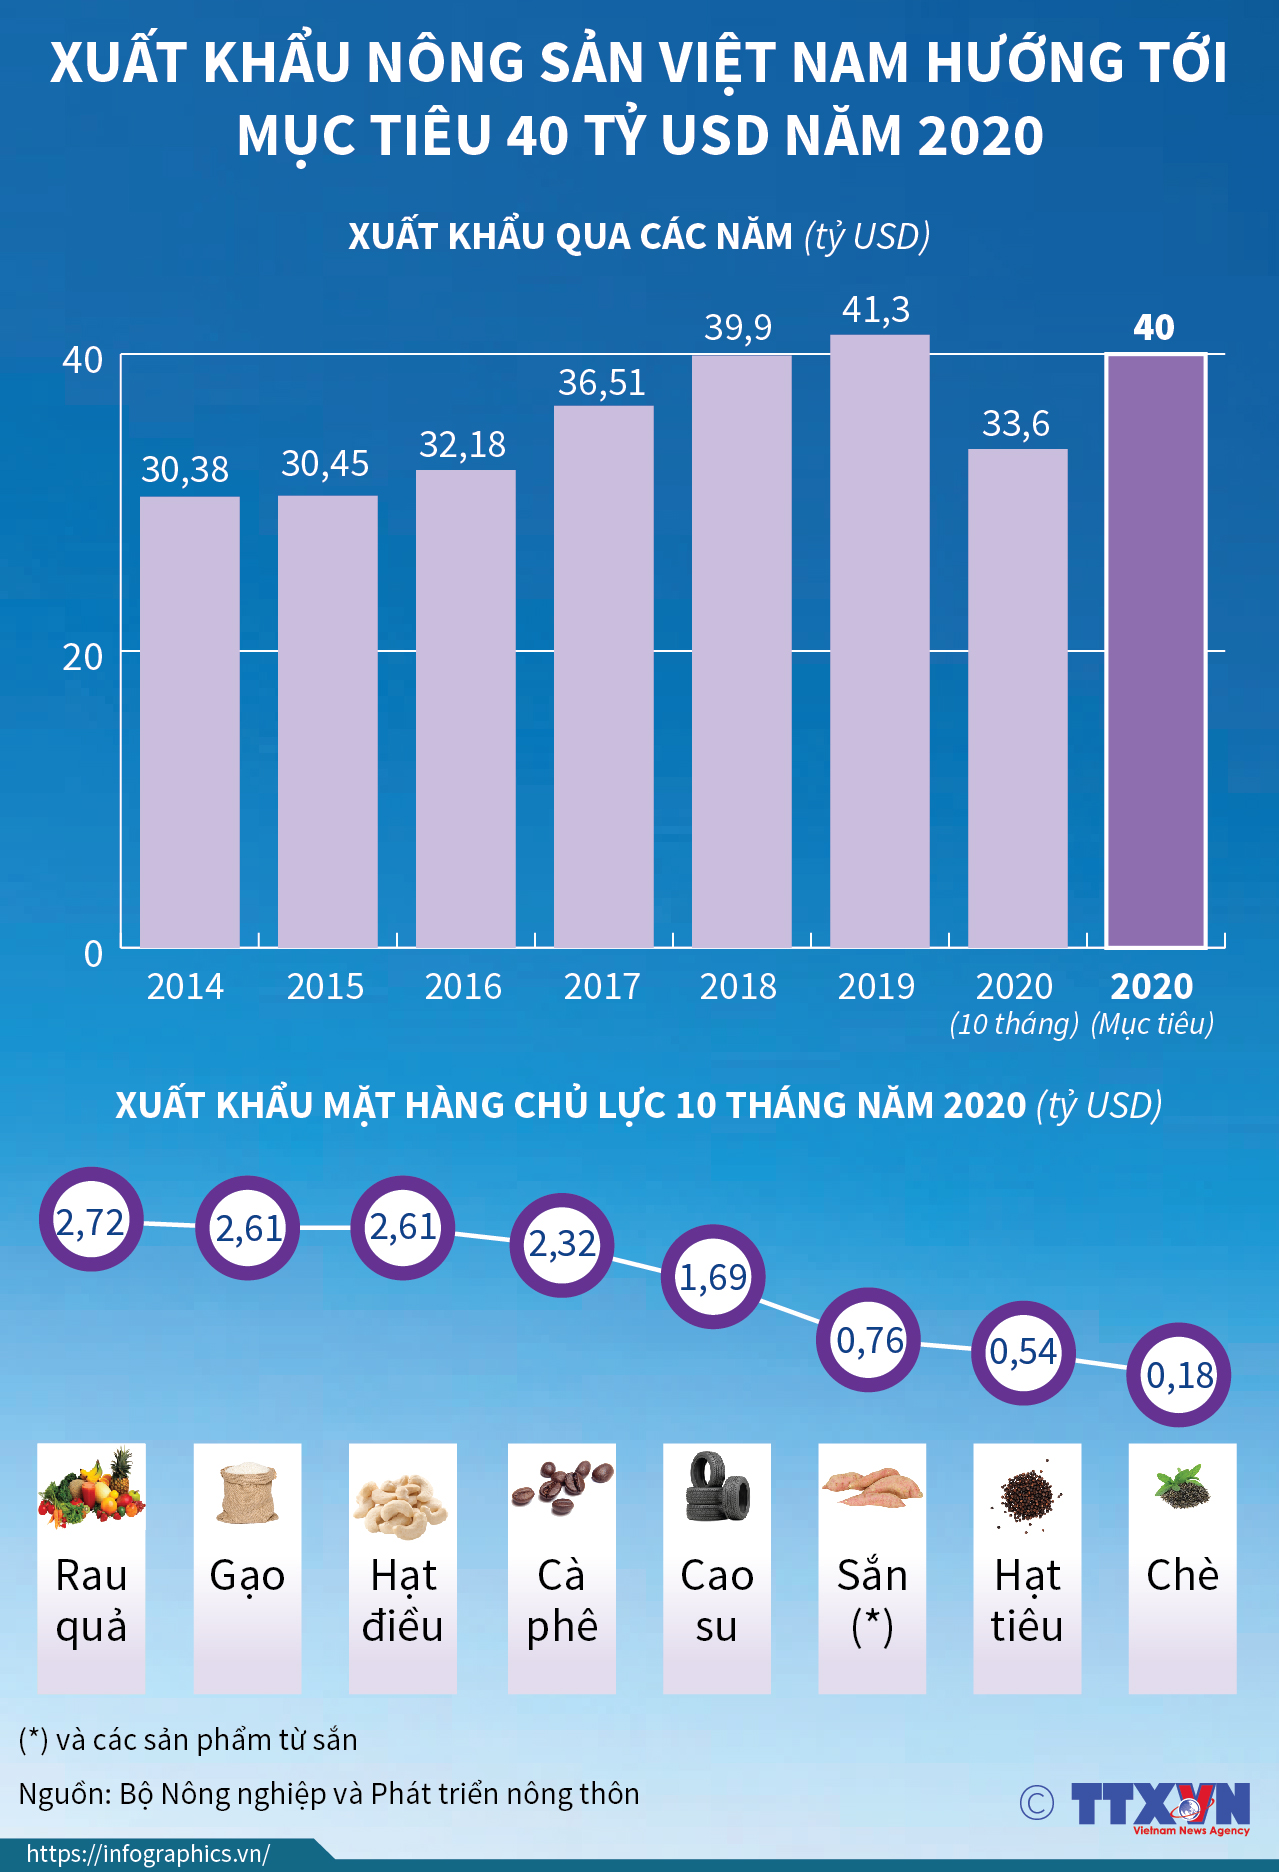 Xuất khẩu nông sản Việt Nam hướng tới mục tiêu 40 tỷ USD năm 2020